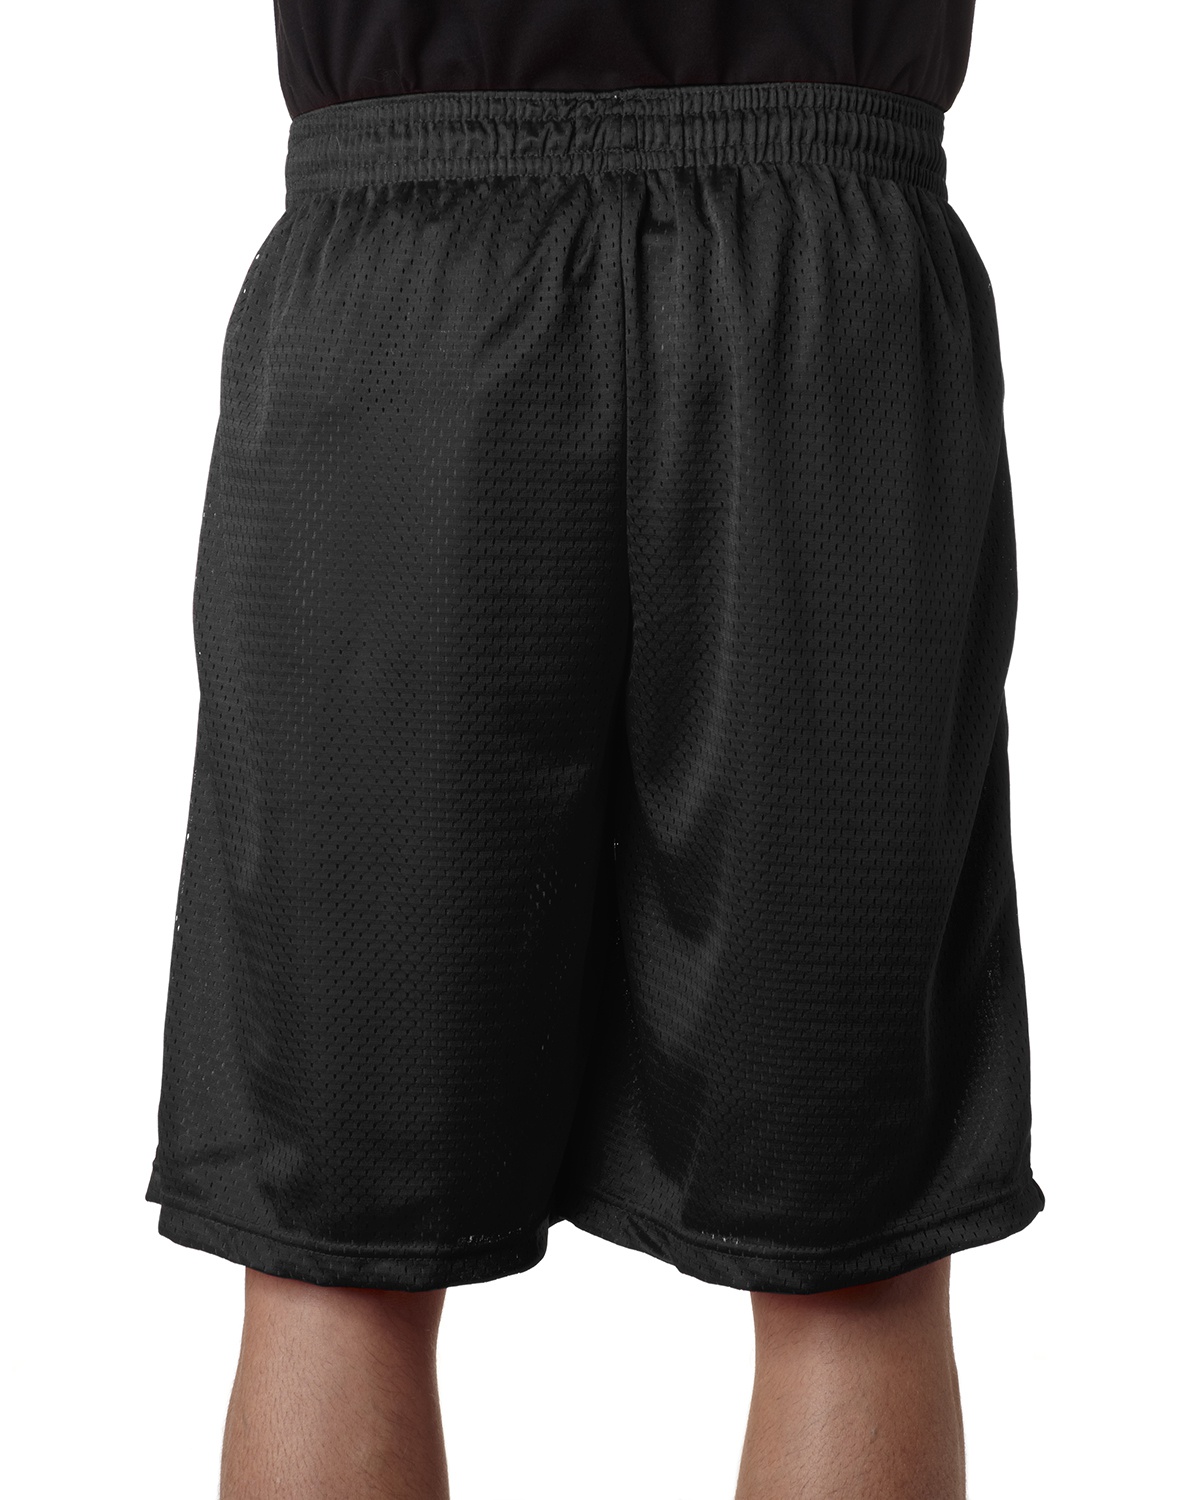 Badger 7219 Pro Mesh 9 Inseam Pocketed Shorts-Veetrends.com